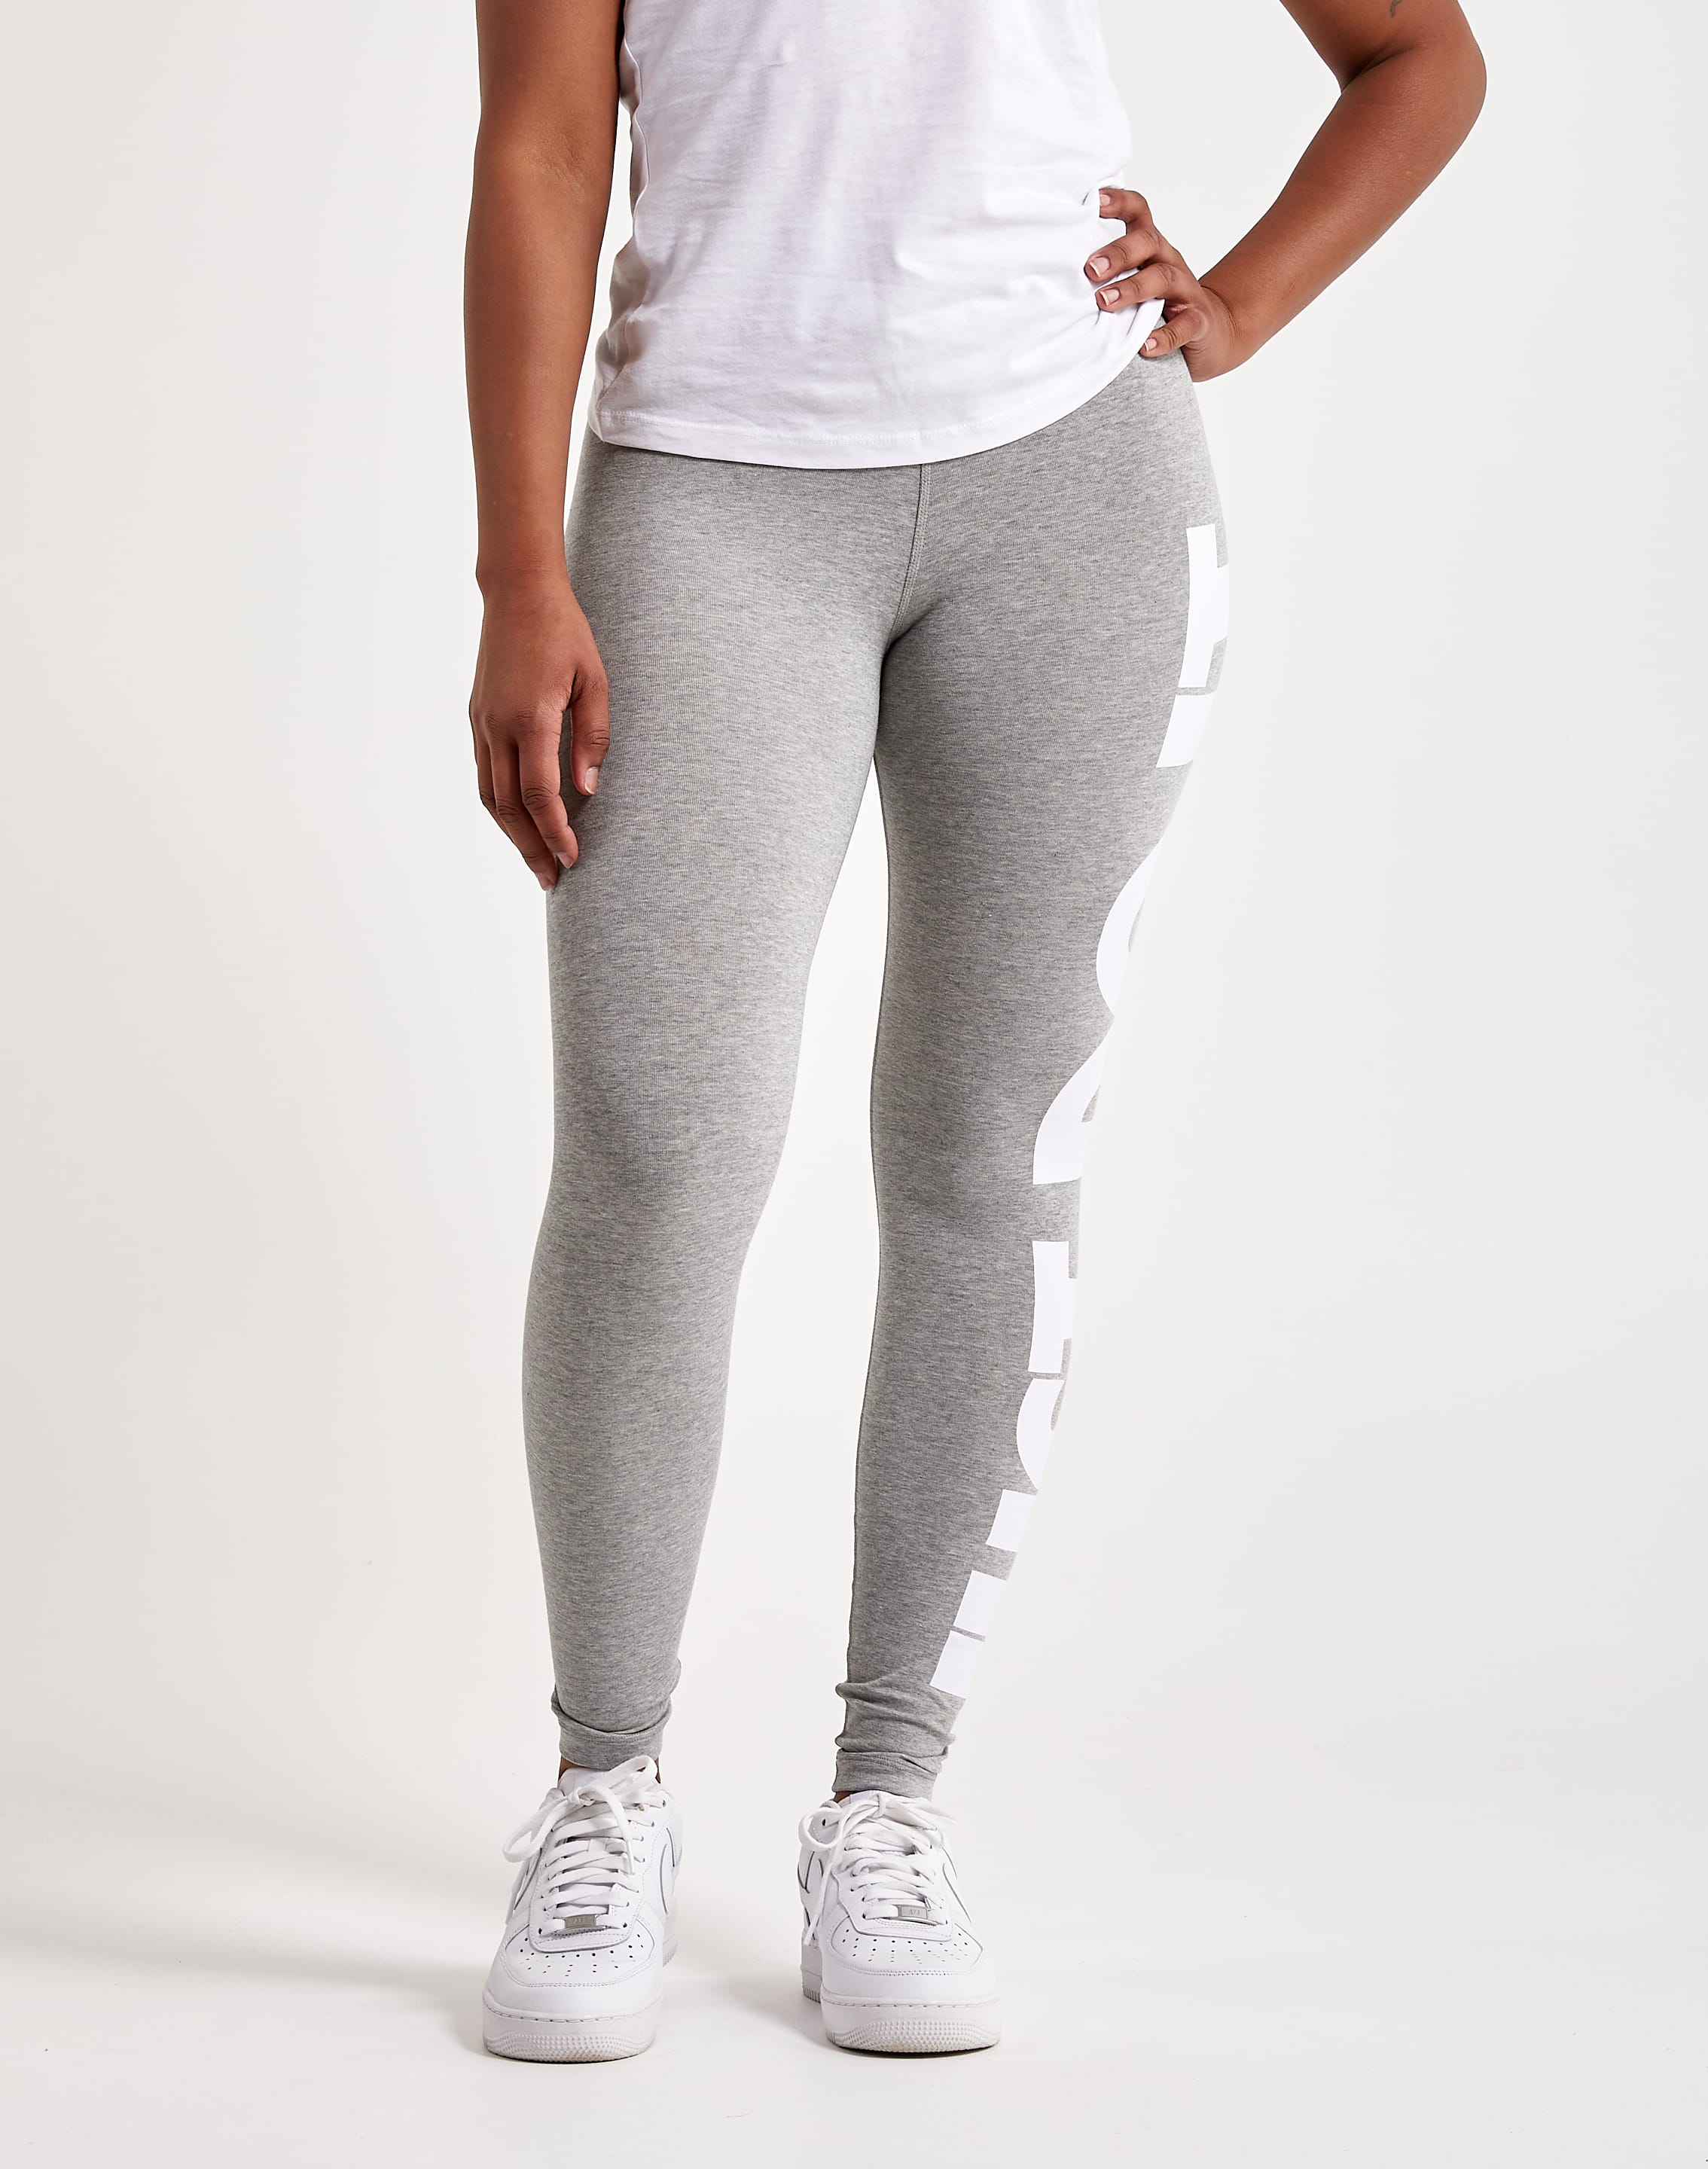 Nike Women's Sportswear Varsity Leggings Size S Gray